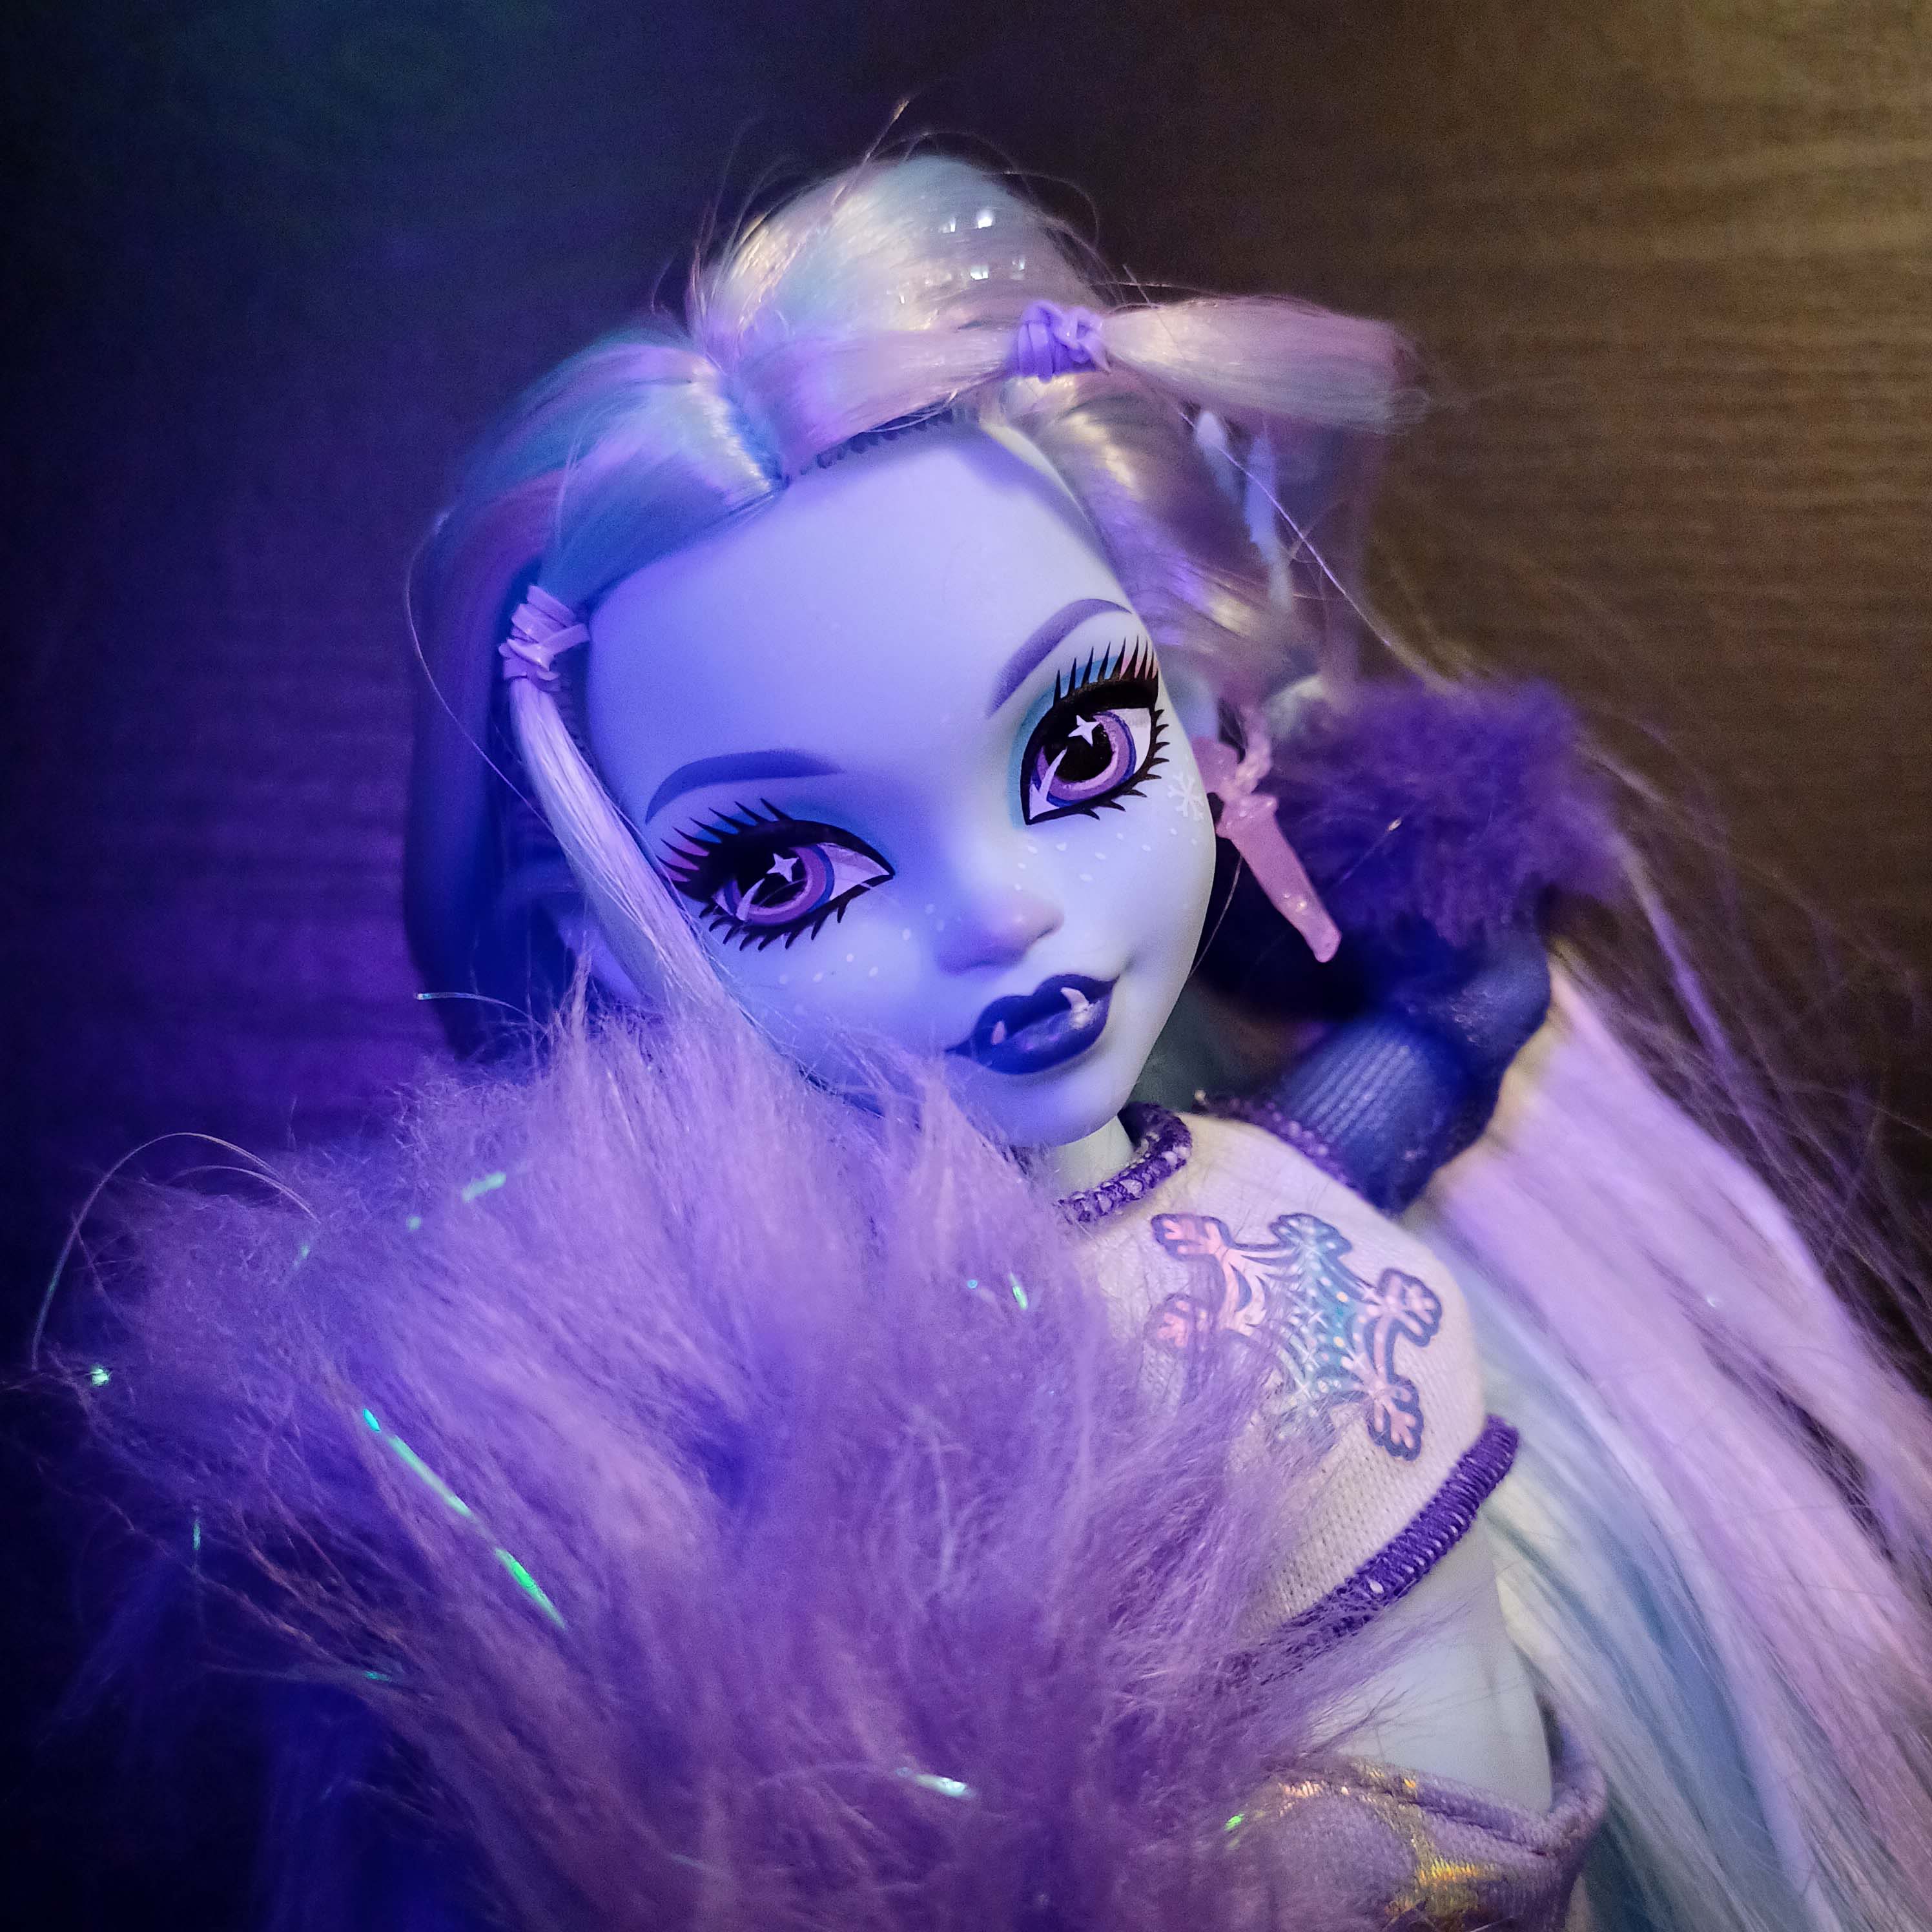 MH Monster High G3 Dolls